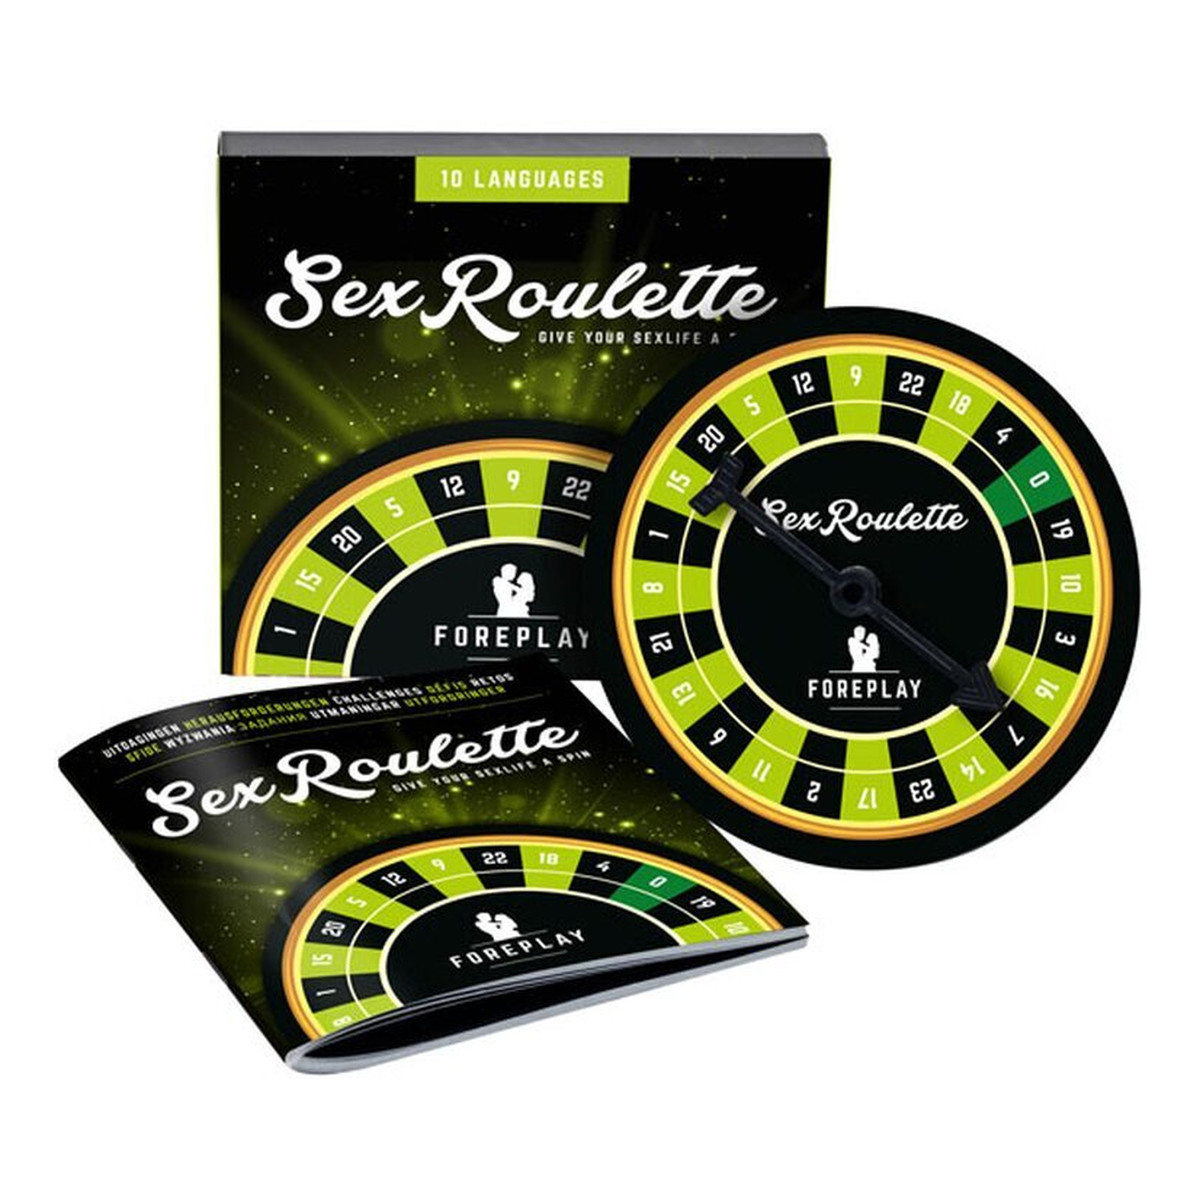 Tease & Please Sex roulette foreplay wielojęzyczna gra erotyczna